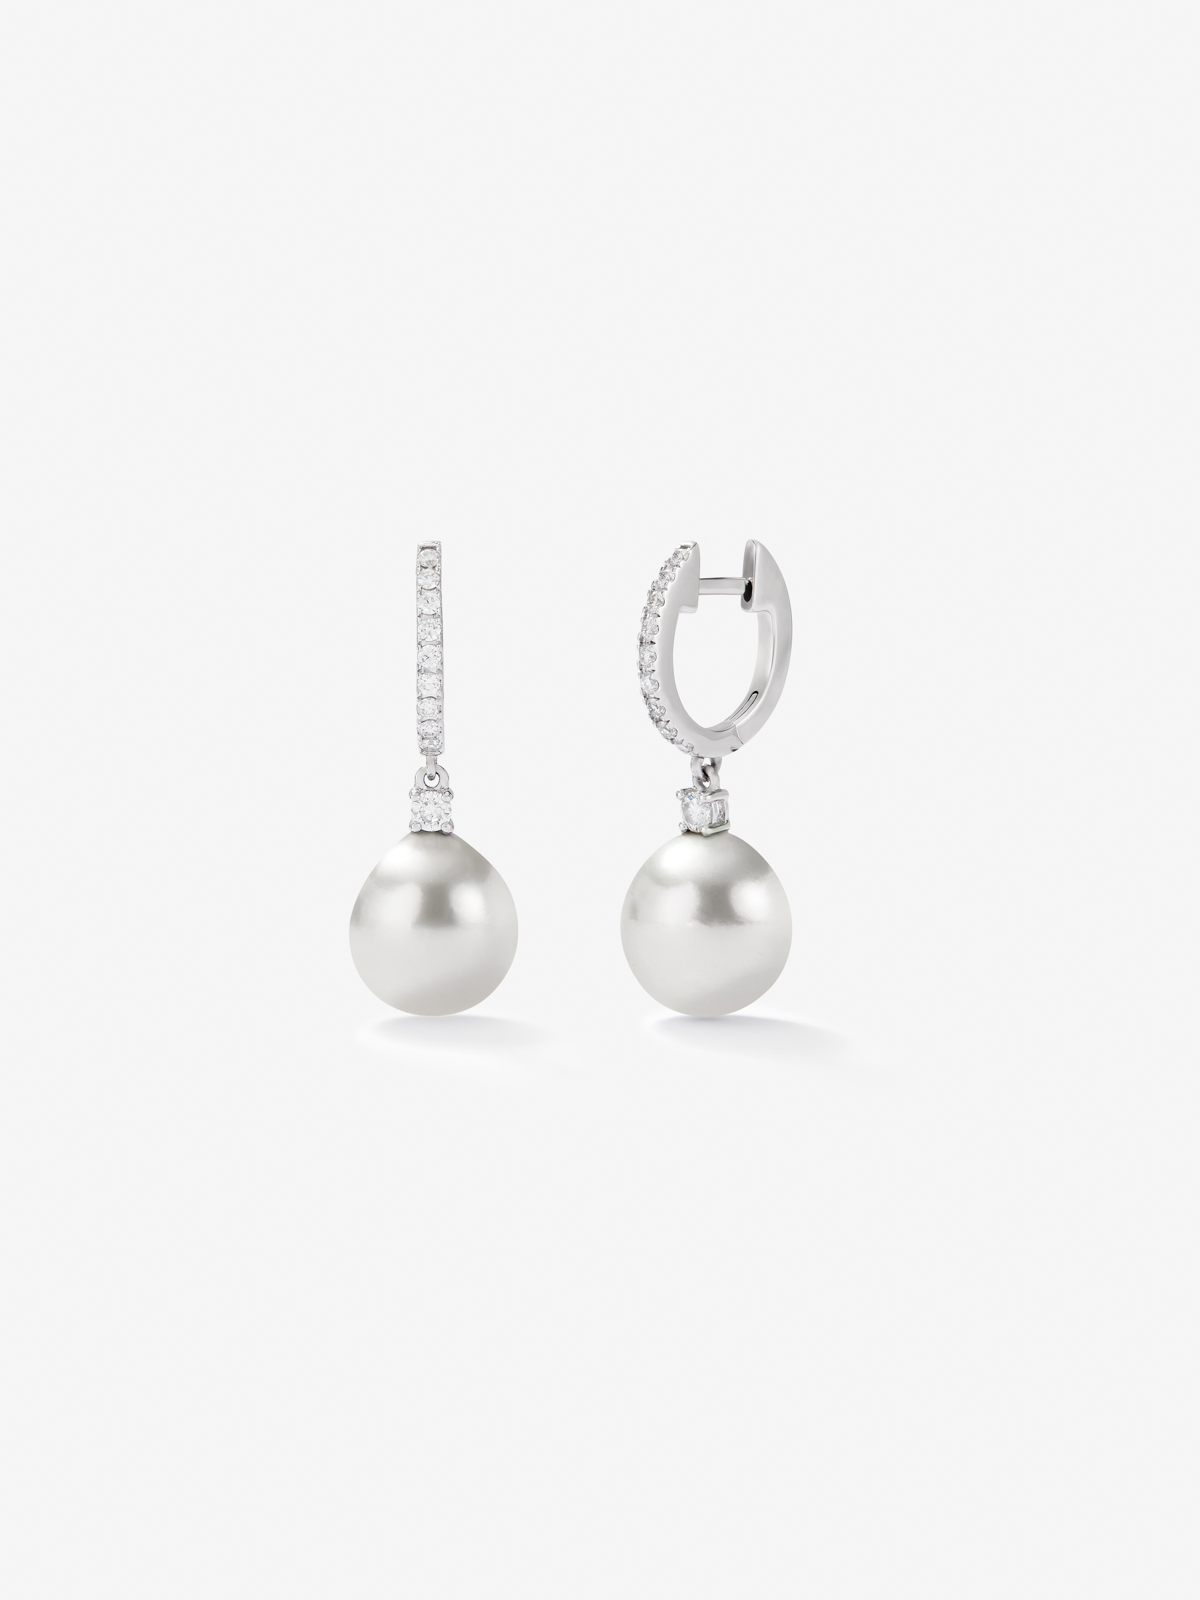 Pendientes de oro blanco de 18K con perlas australianas de 9 mm y diamantes en talla brillante de 0,31 cts